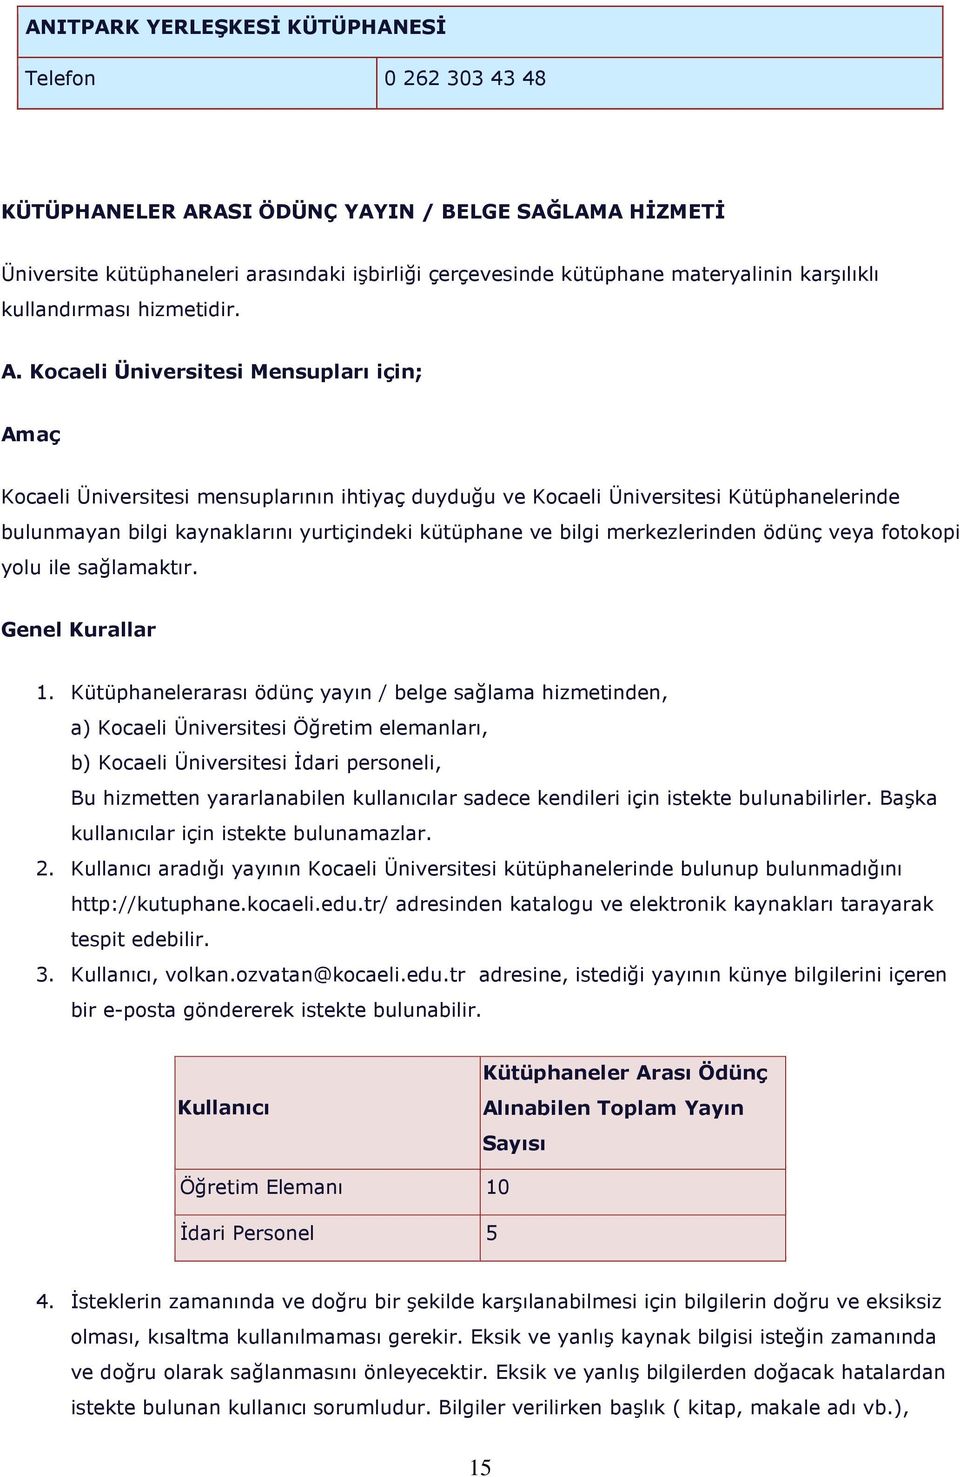 Kocaeli Üniversitesi Mensupları için; Amaç Kocaeli Üniversitesi mensuplarının ihtiyaç duyduğu ve Kocaeli Üniversitesi Kütüphanelerinde bulunmayan bilgi kaynaklarını yurtiçindeki kütüphane ve bilgi